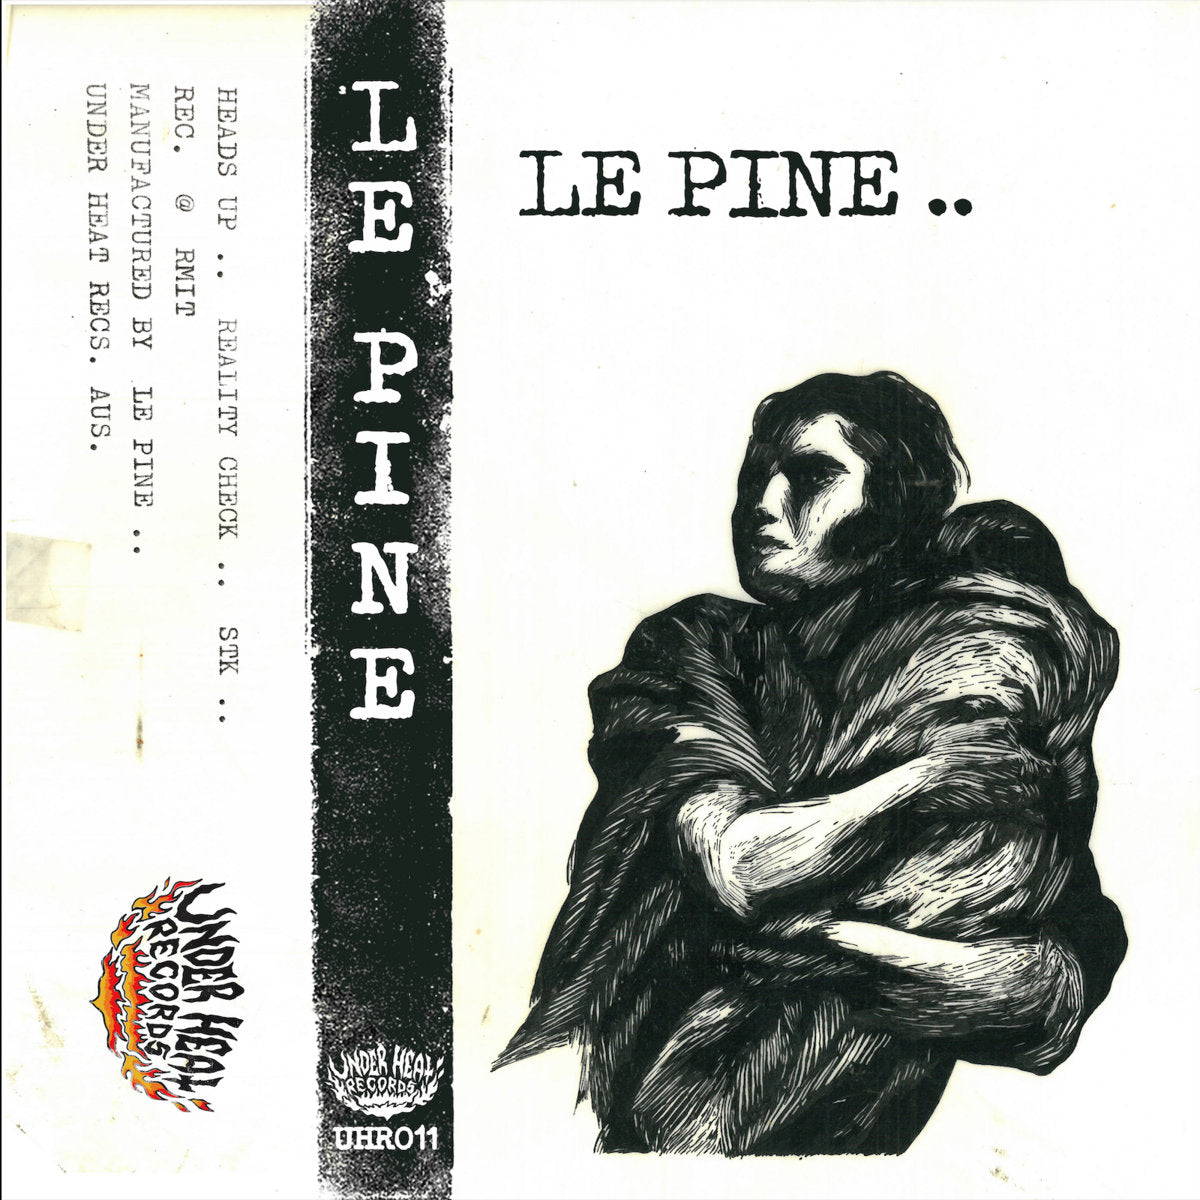 LE PINE - "LE PINE..” CS